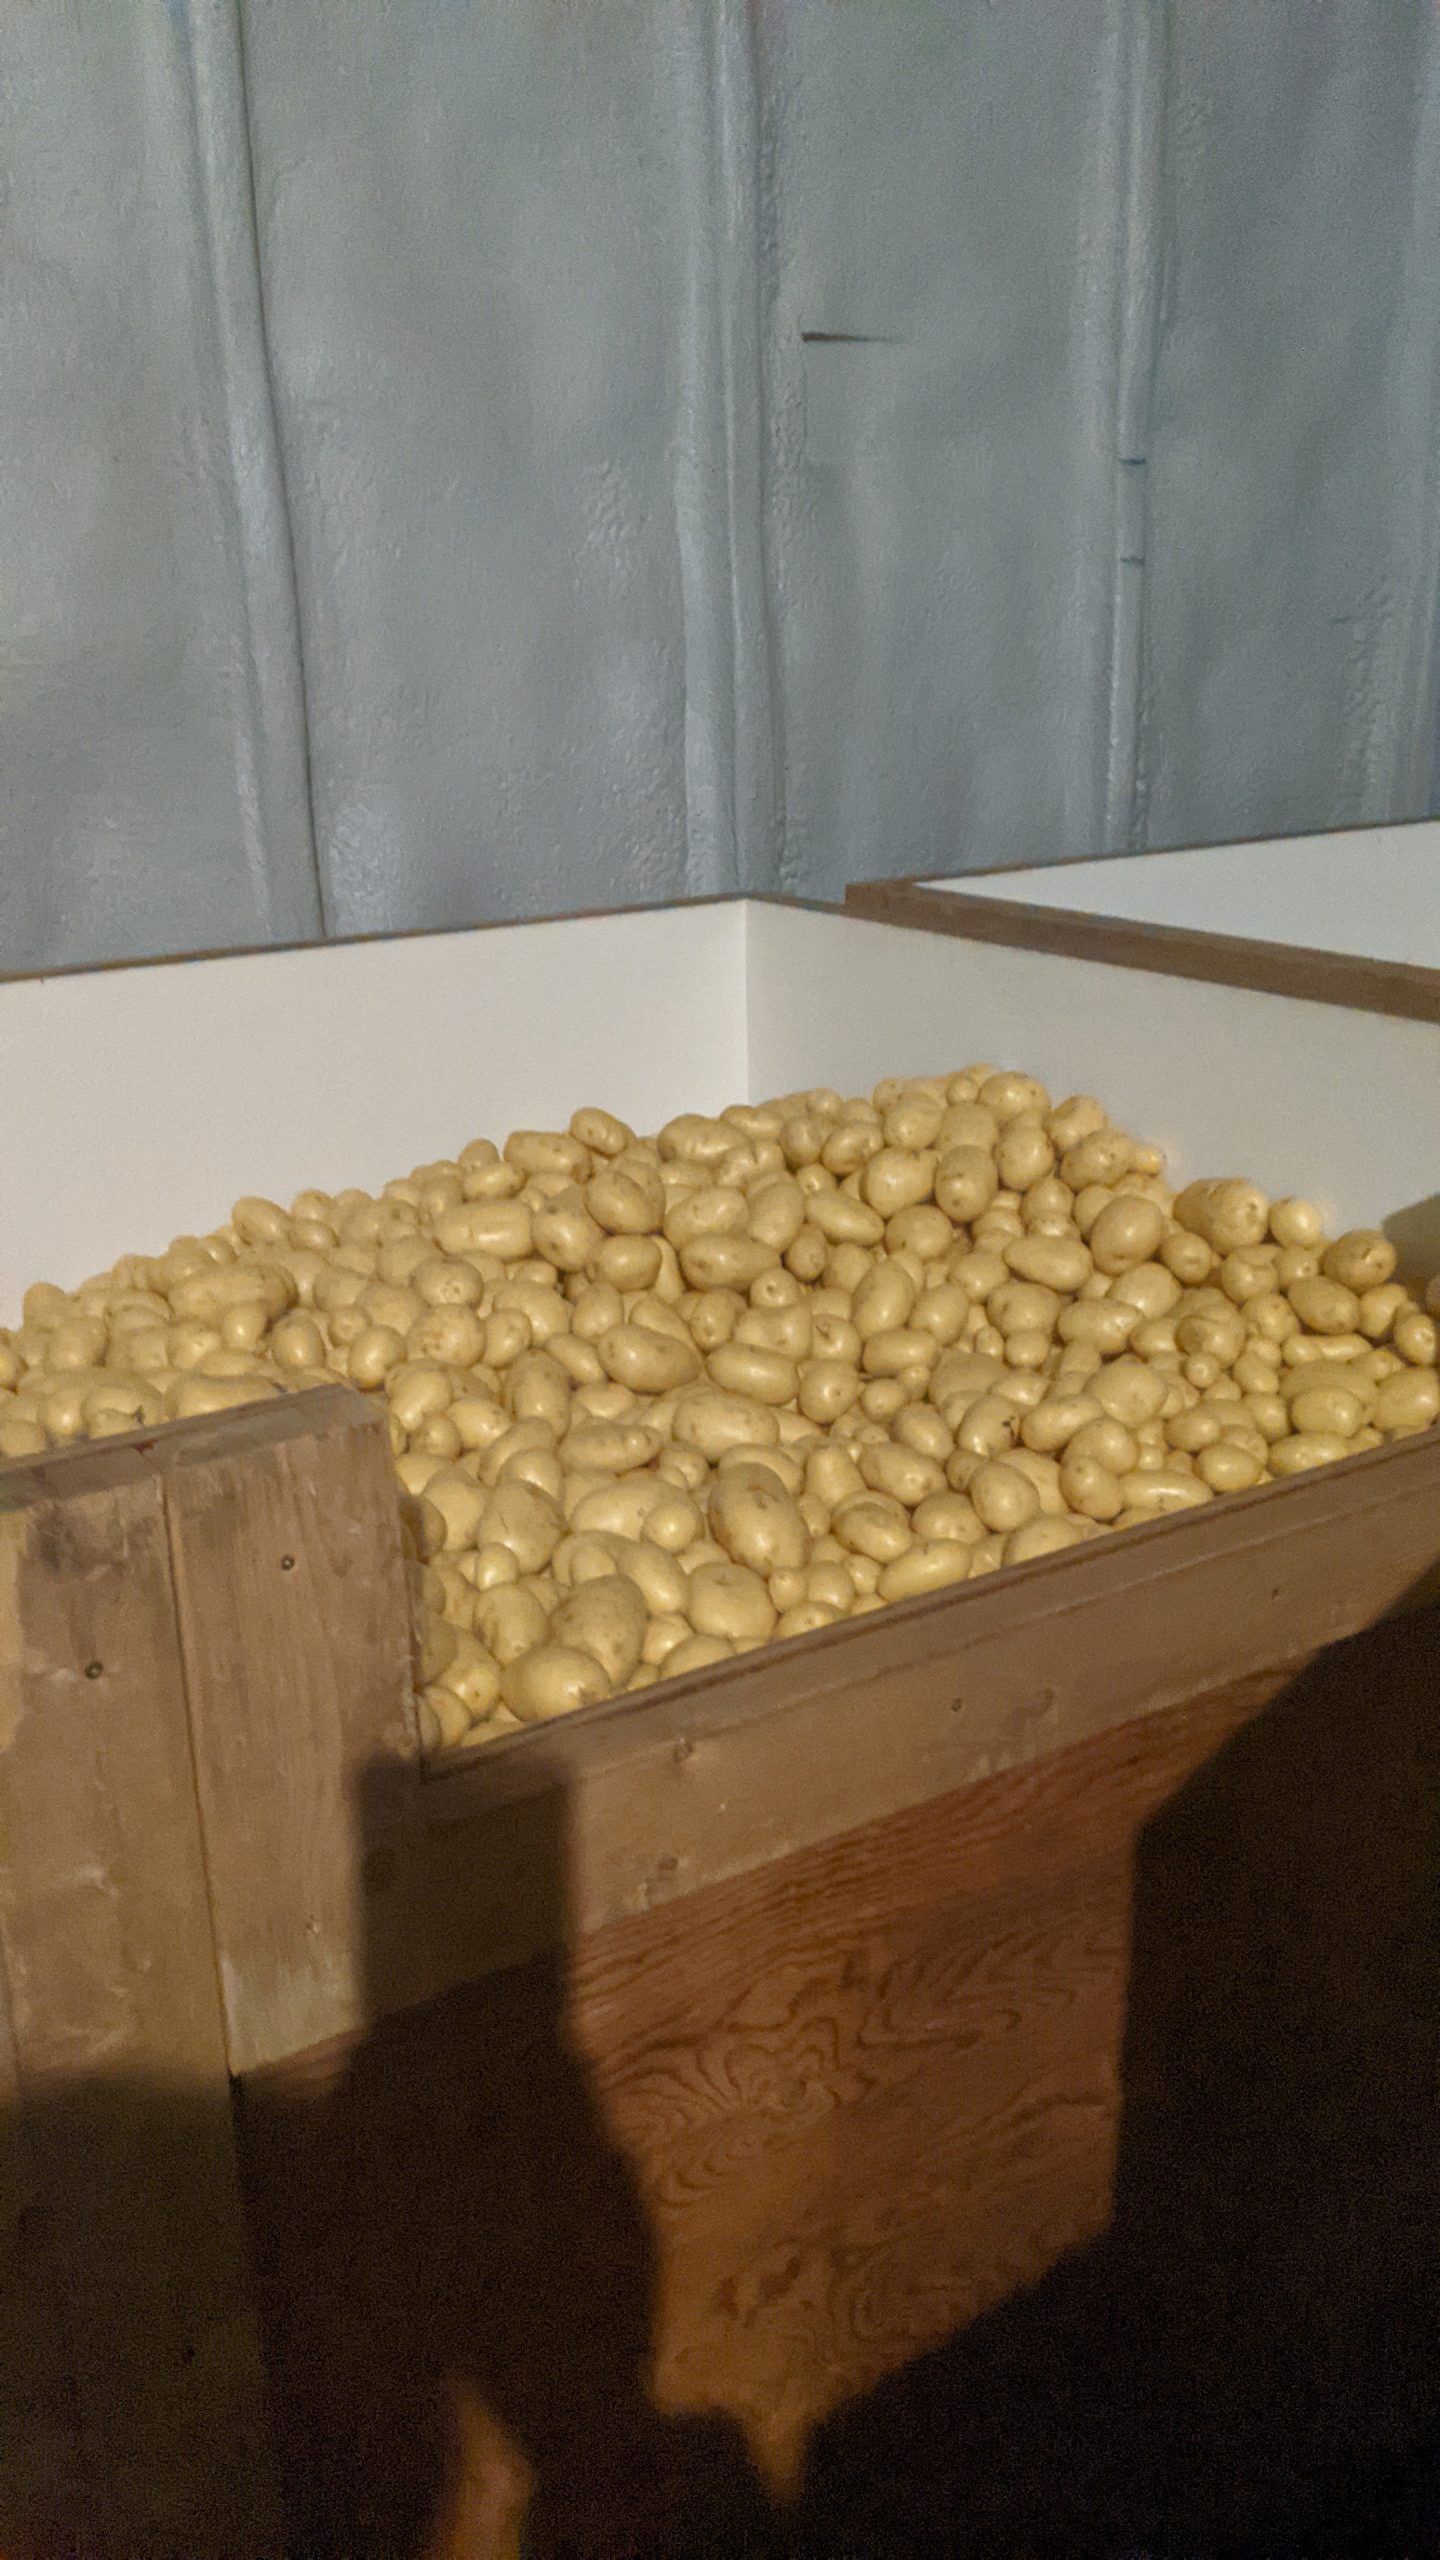 Yukon Potatoes - 50 lb case